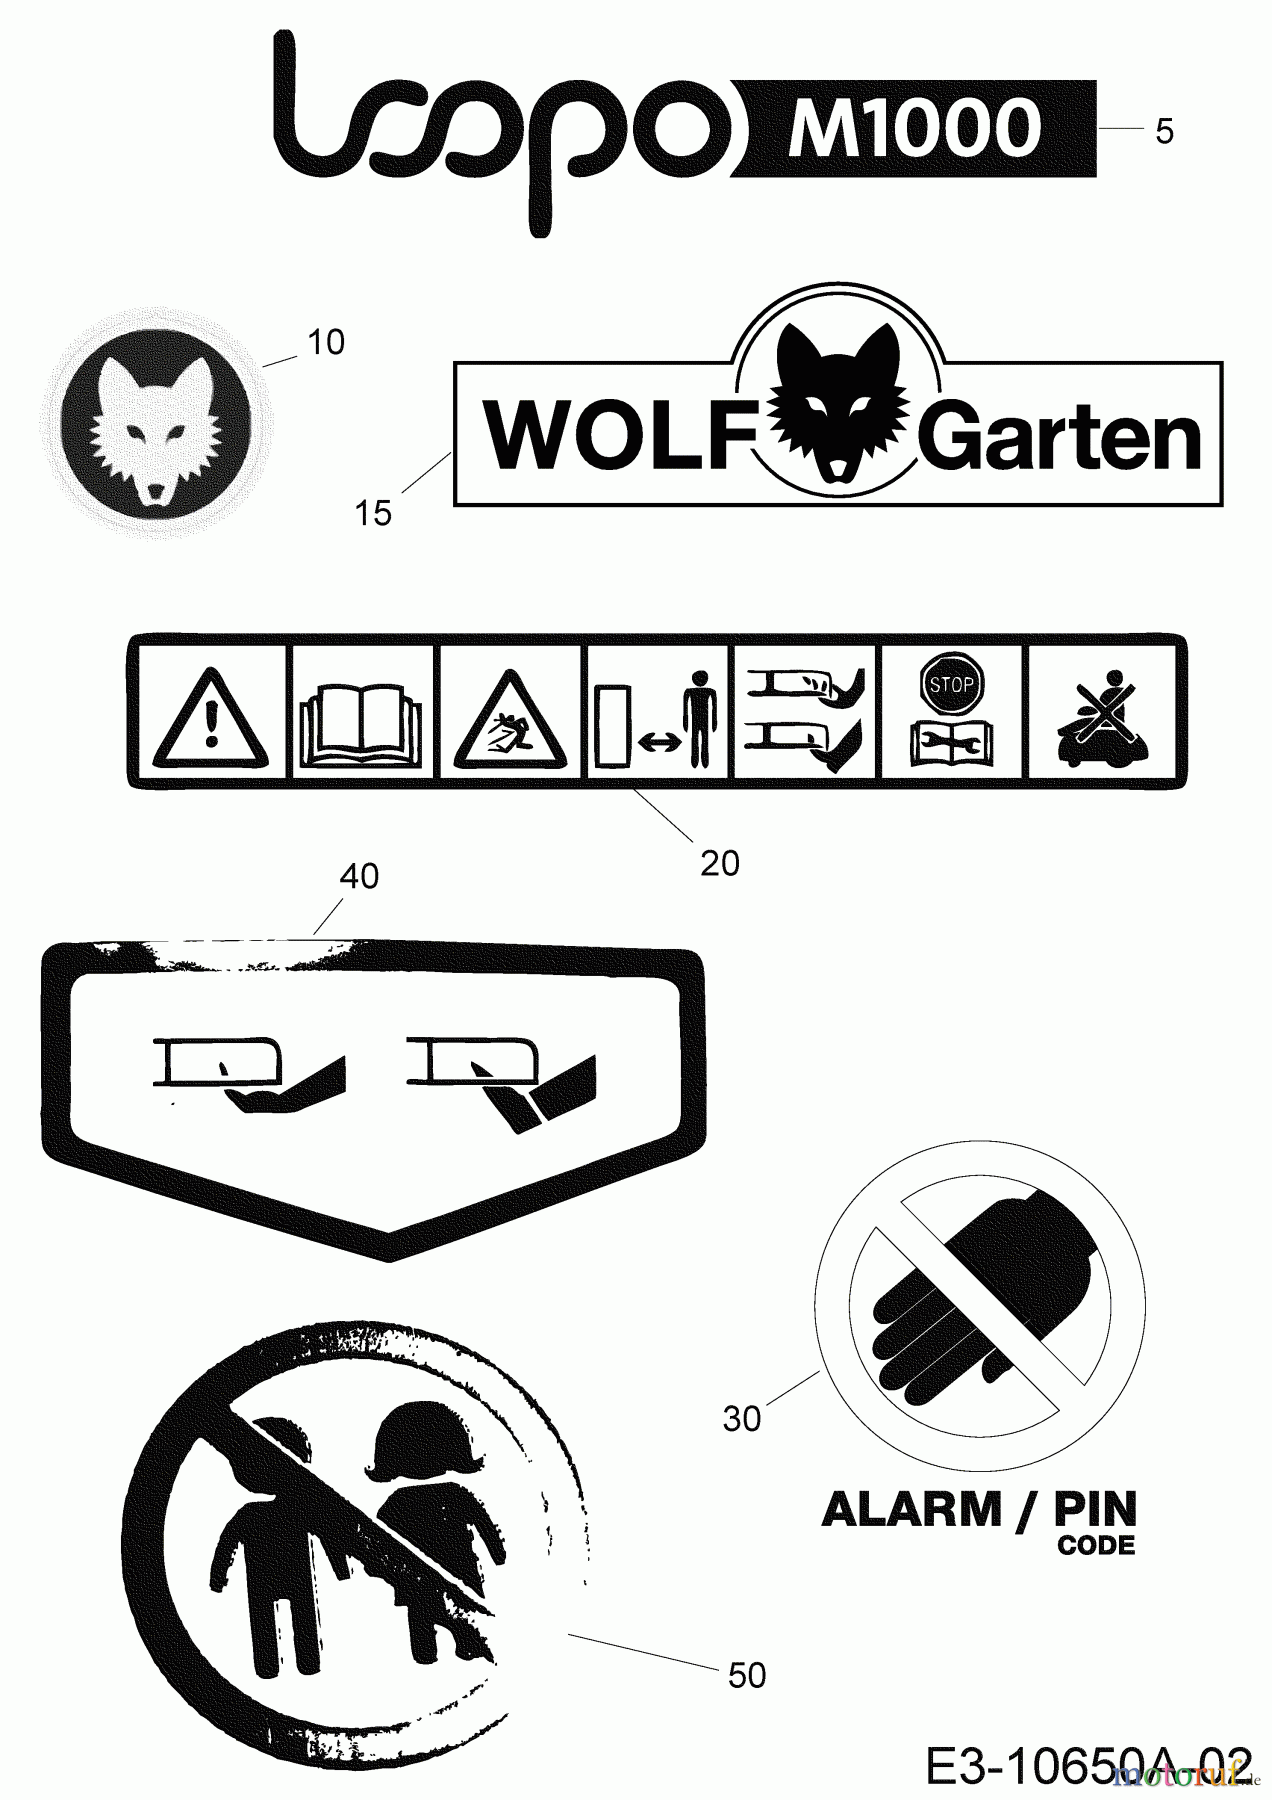  Wolf-Garten Mähroboter Loopo M1000 22CCBA-A650 (2020) Aufkleber